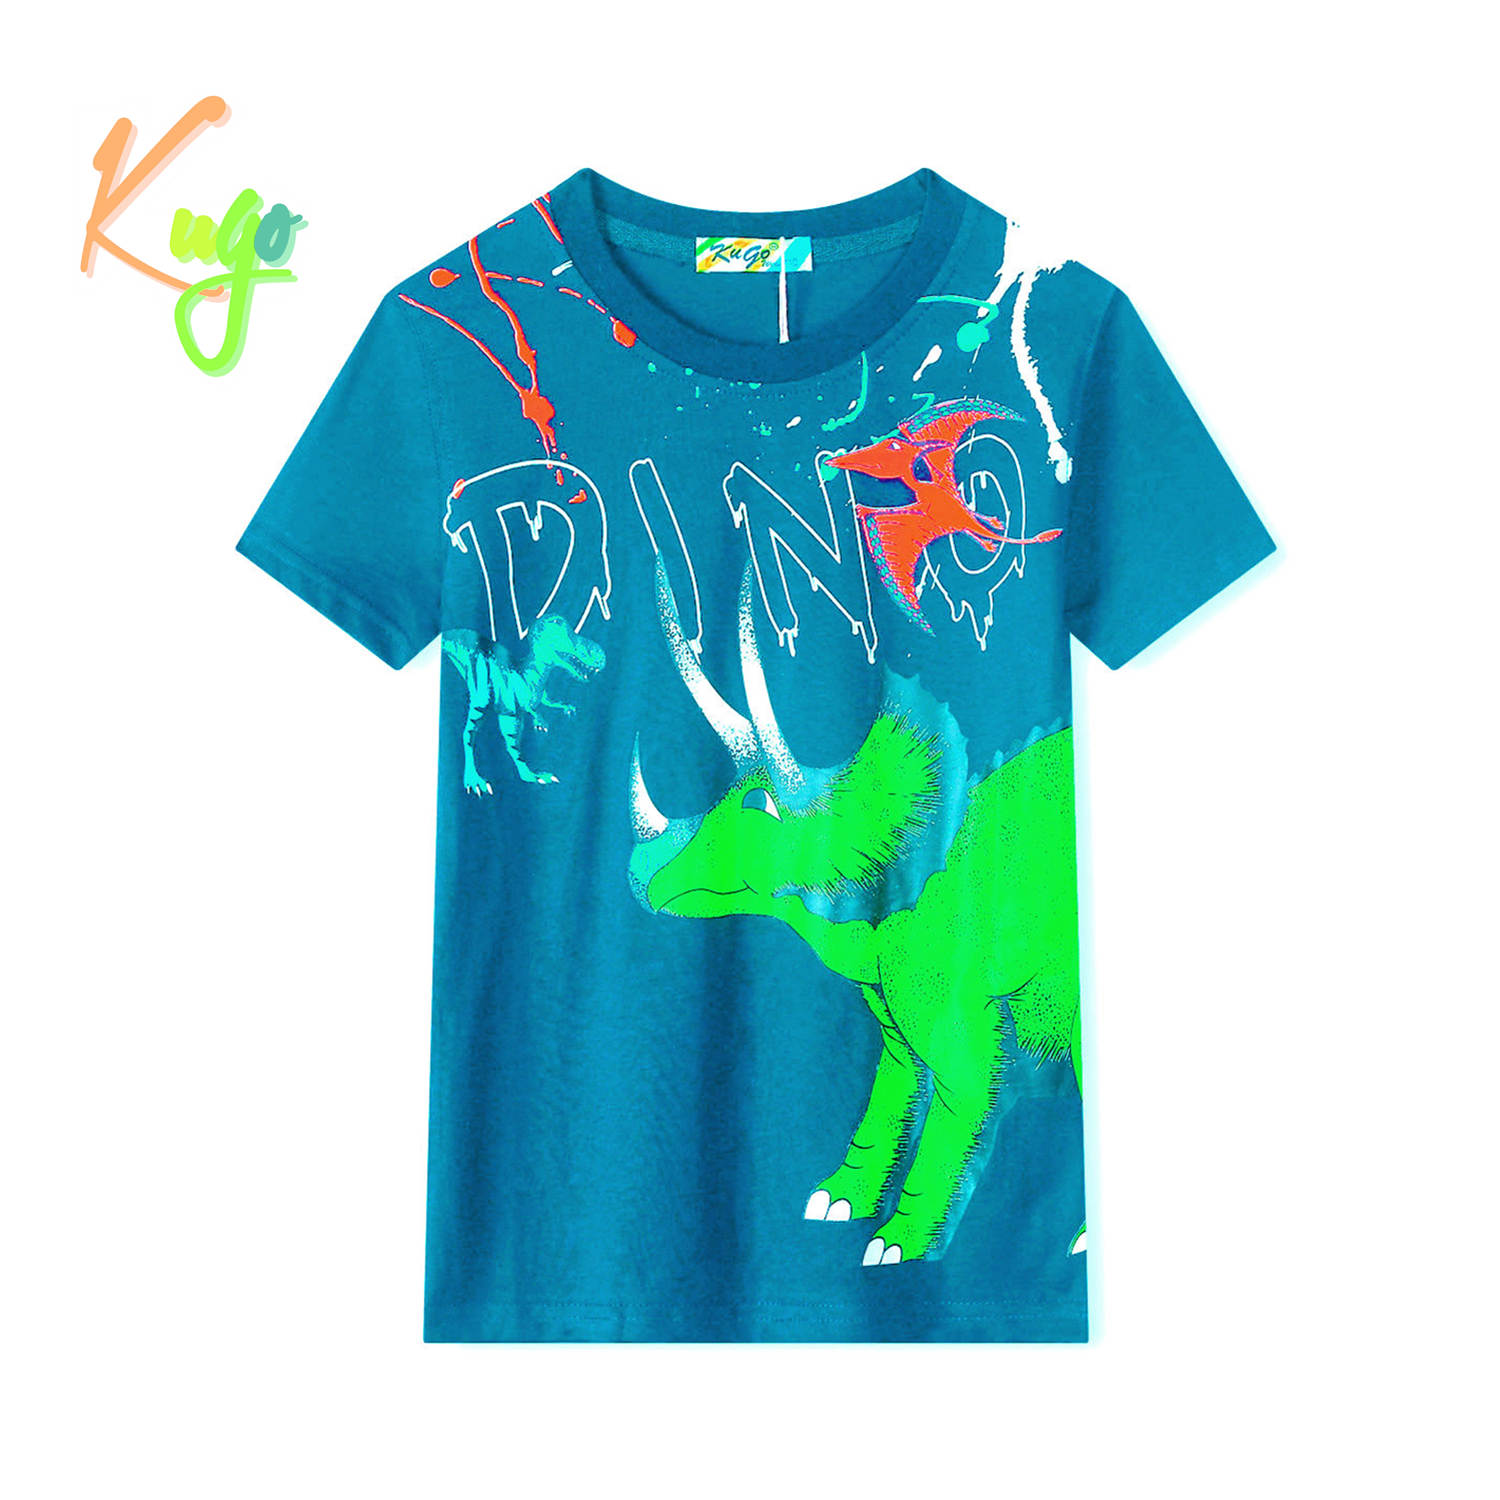 Chlapecké tričko - KUGO TM8571C, tyrkysová Barva: Tyrkysová, Velikost: 116